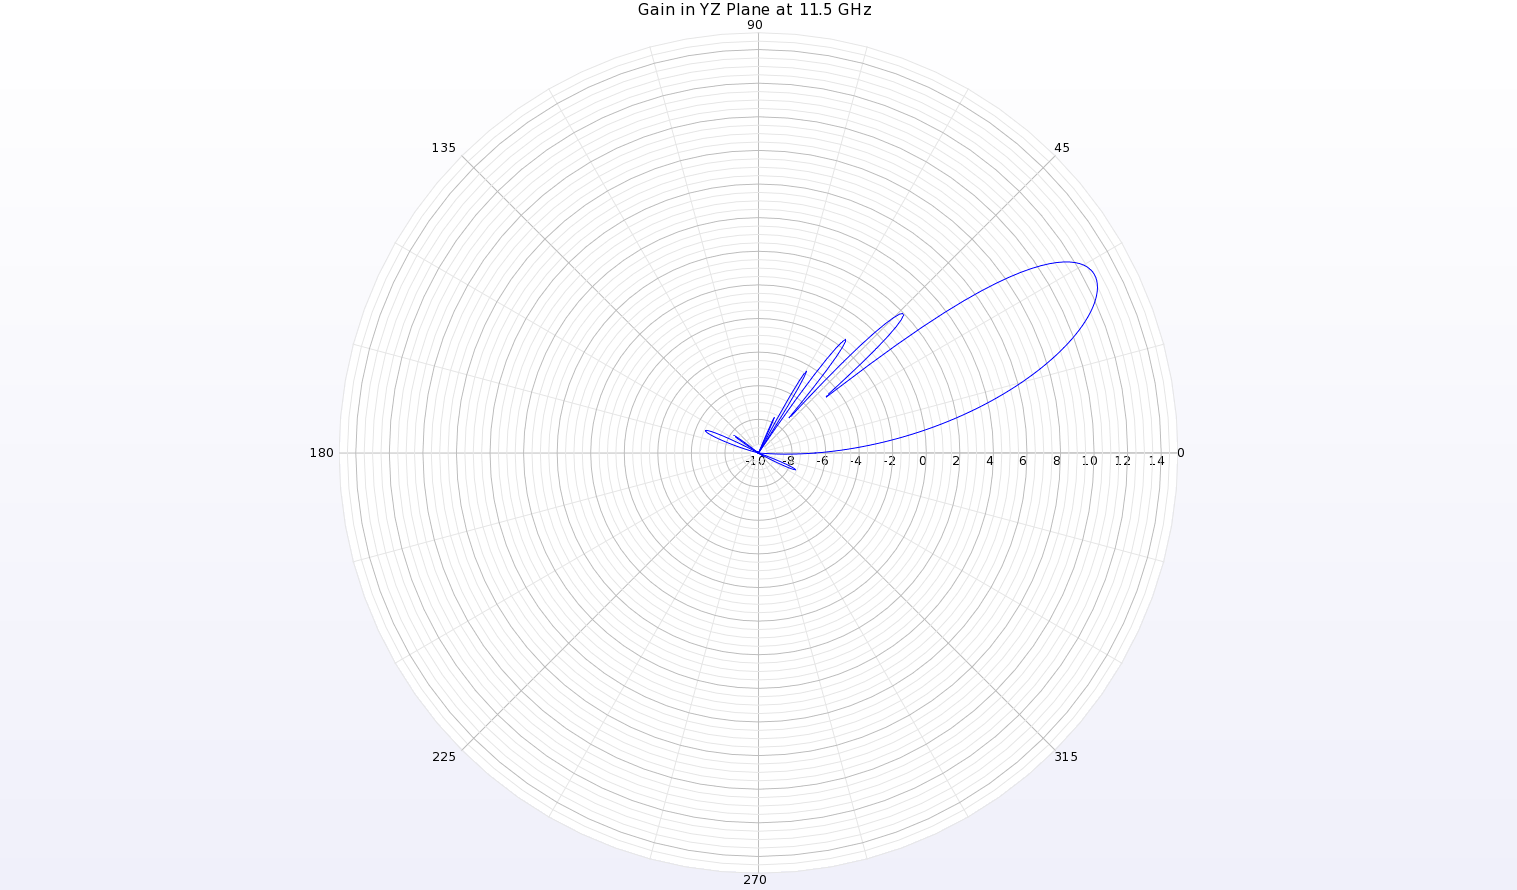 Abbildung 13: Eine Polardiagramm des Gewinndiagramms bei 11,5 GHz in der YZ-Ebene der Antenne zeigt einen Strahl bei theta=28 Grad mit einem Spitzengewinn von 12,7 dBi.